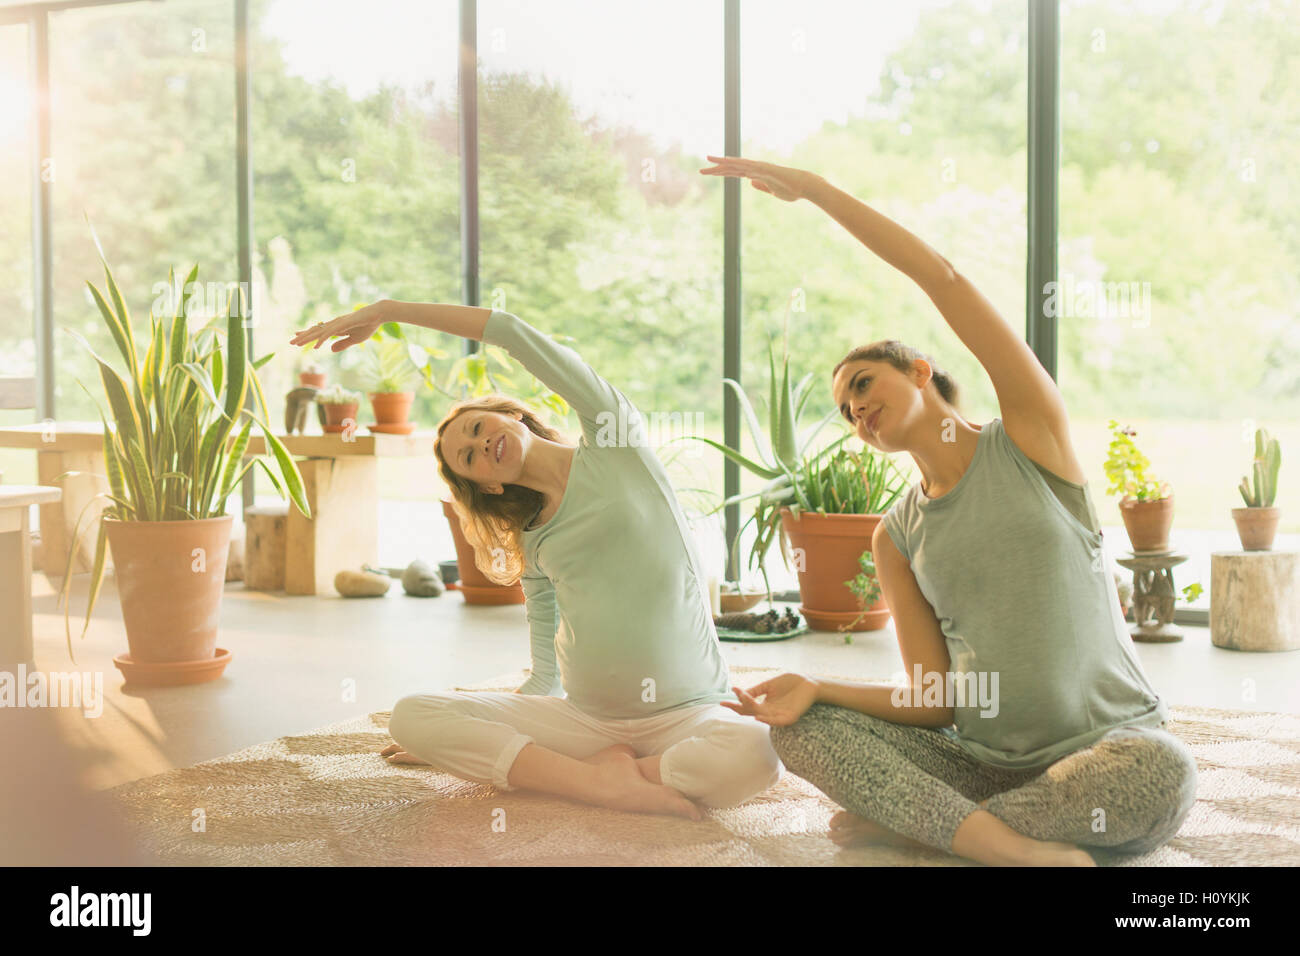 La grossesse woman practicing yoga étirement latéral Banque D'Images